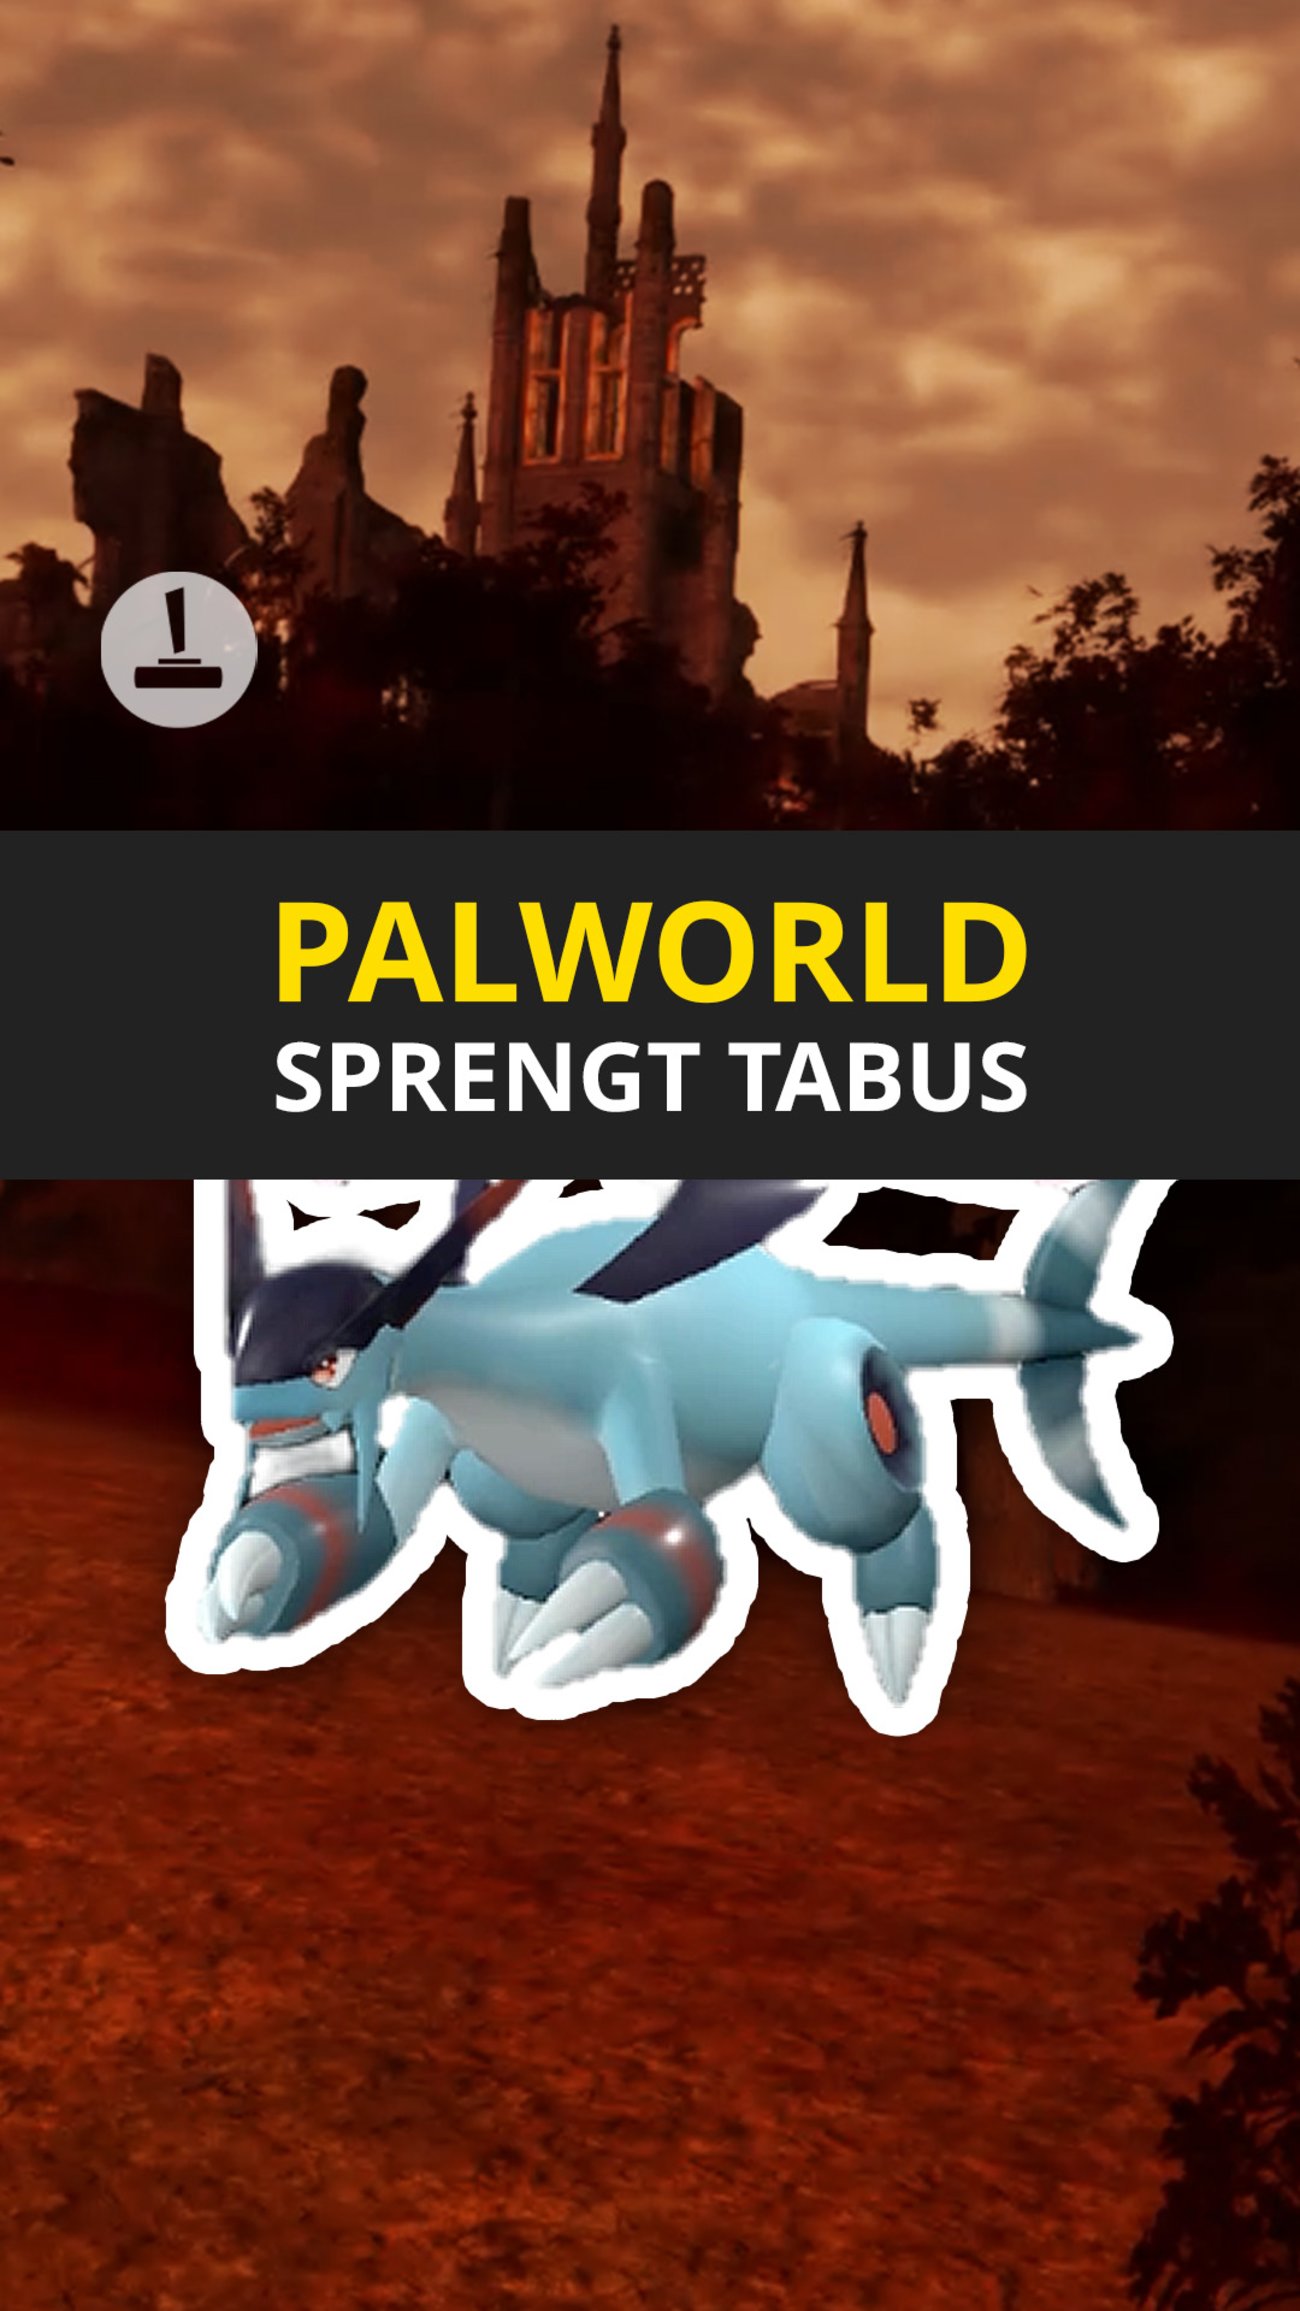 Palworld pfeifft auf Grenzen und Tabus!